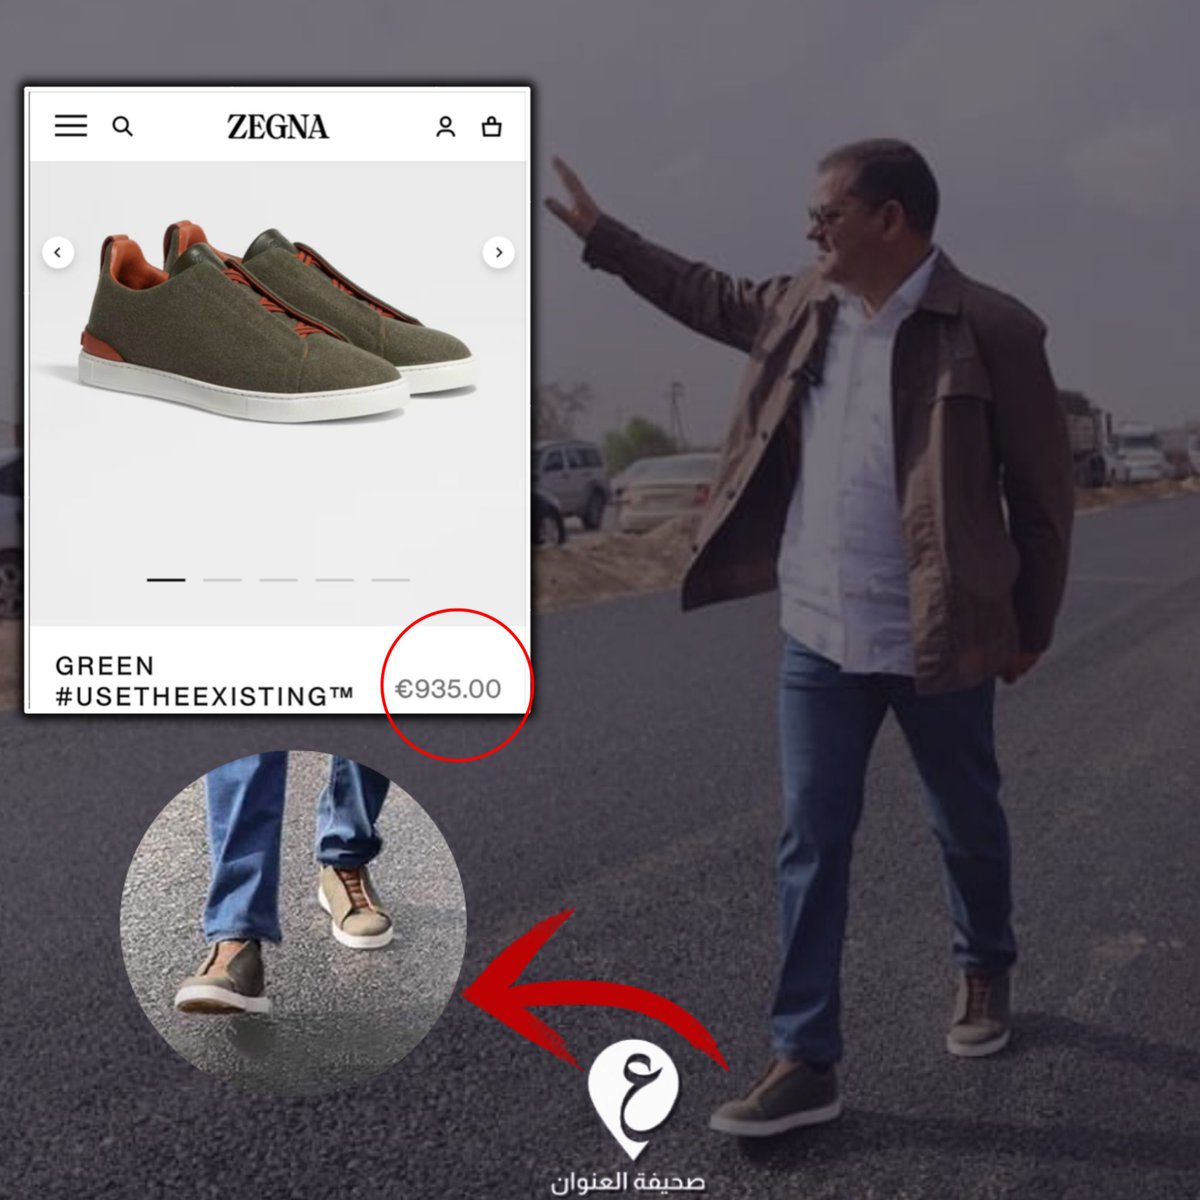 مفارقات | شخص يرتدي حذاء بقيمة 935 يورو ما يقدر بـ ' 6200 دينار ' ، يريد رفع الدعم عن المحروقات على مواطن يتقاضى راتب 650 دينار شهرياً بحجة الحفاظ على الميزانية العامة ! #العنوان #ليبيا #الدبيبة